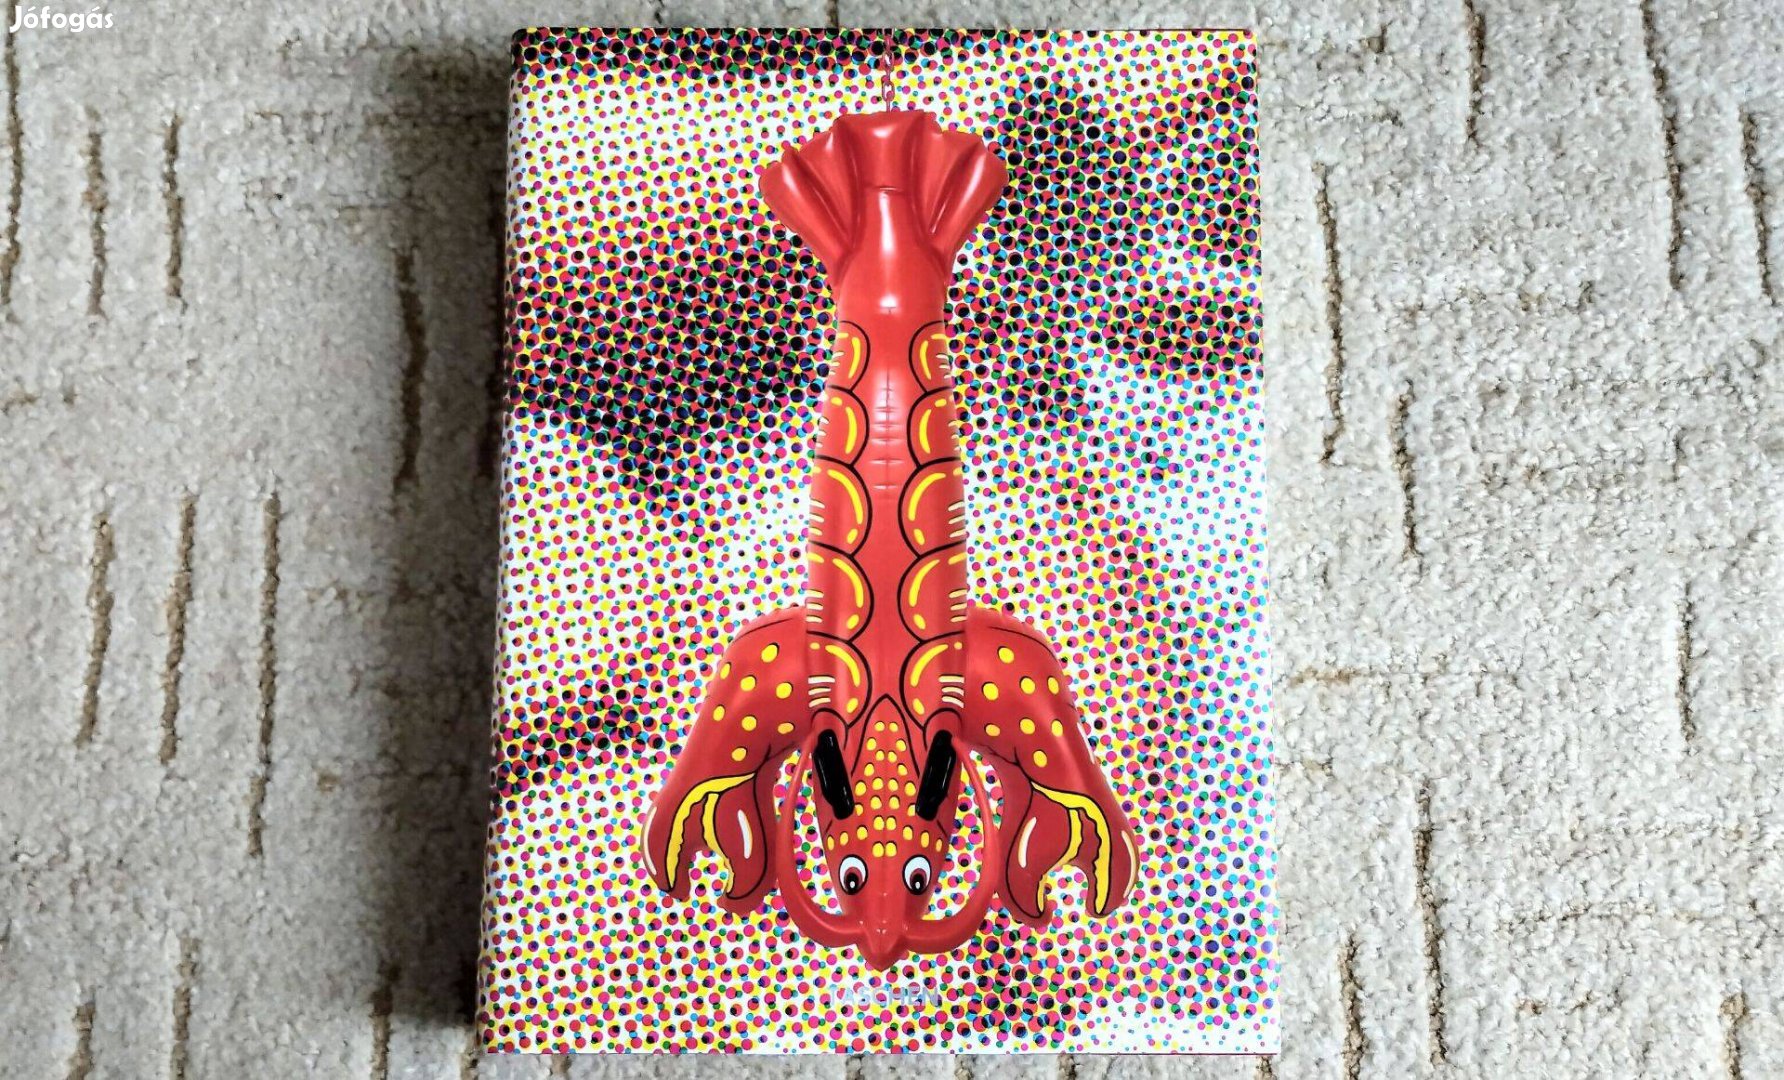 Jeff Koons - Taschen 2009, 592 oldal, 35x26 cm fotóalbum fényképalbum